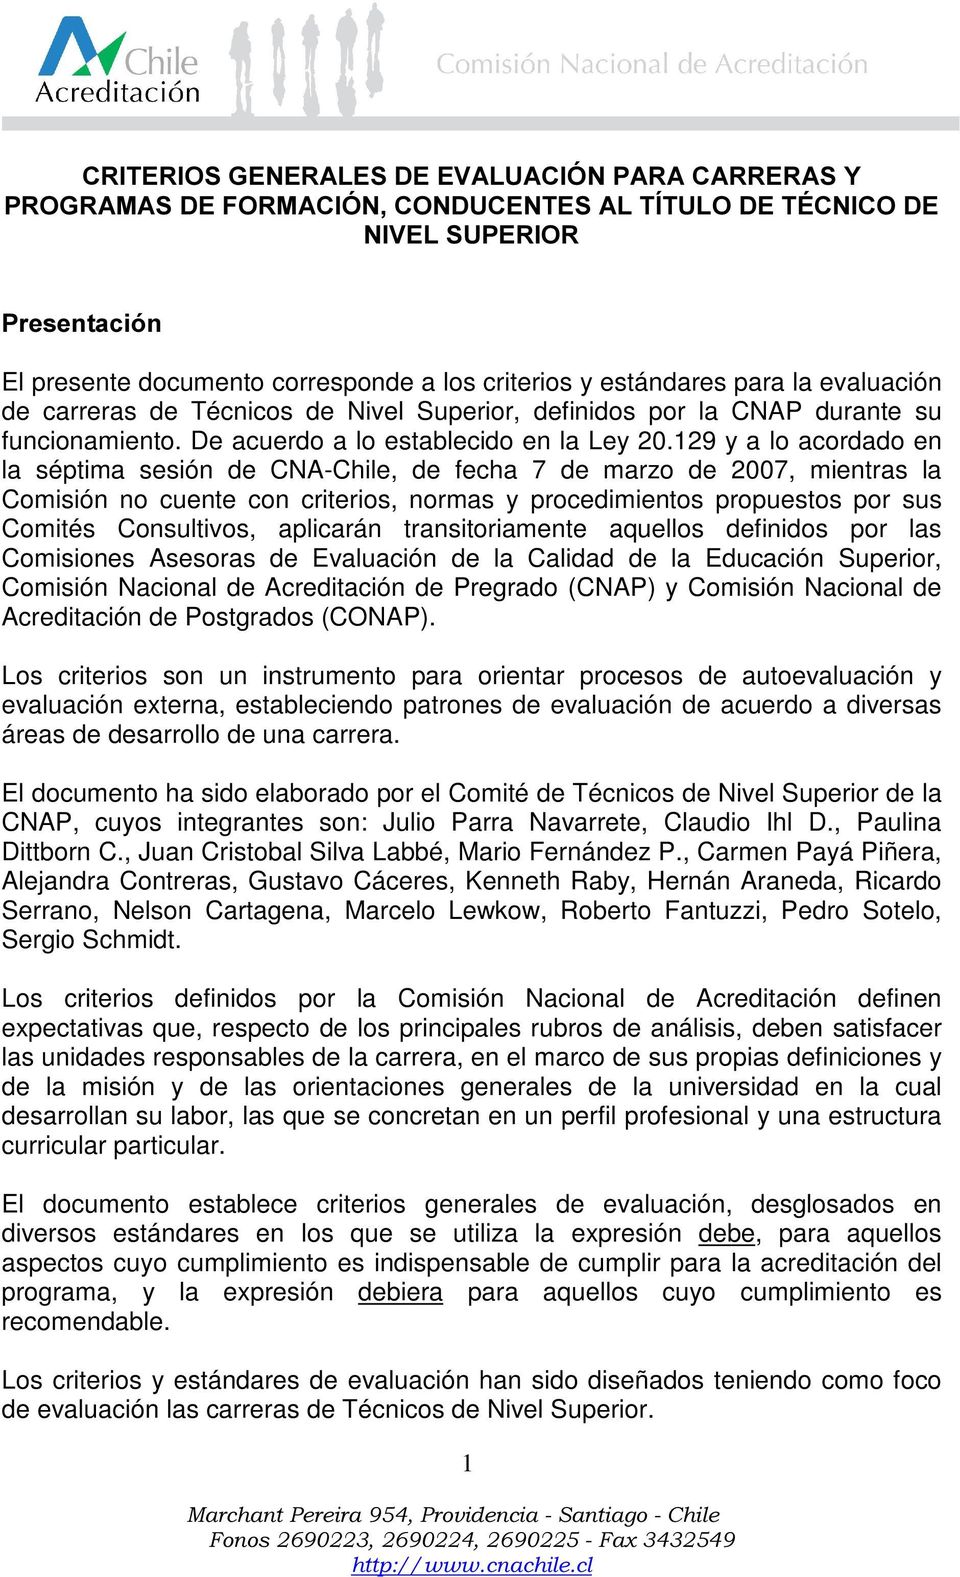 129 y a lo acordado en la séptima sesión de CNA-Chile, de fecha 7 de marzo de 2007, mientras la Comisión no cuente con criterios, normas y procedimientos propuestos por sus Comités Consultivos,